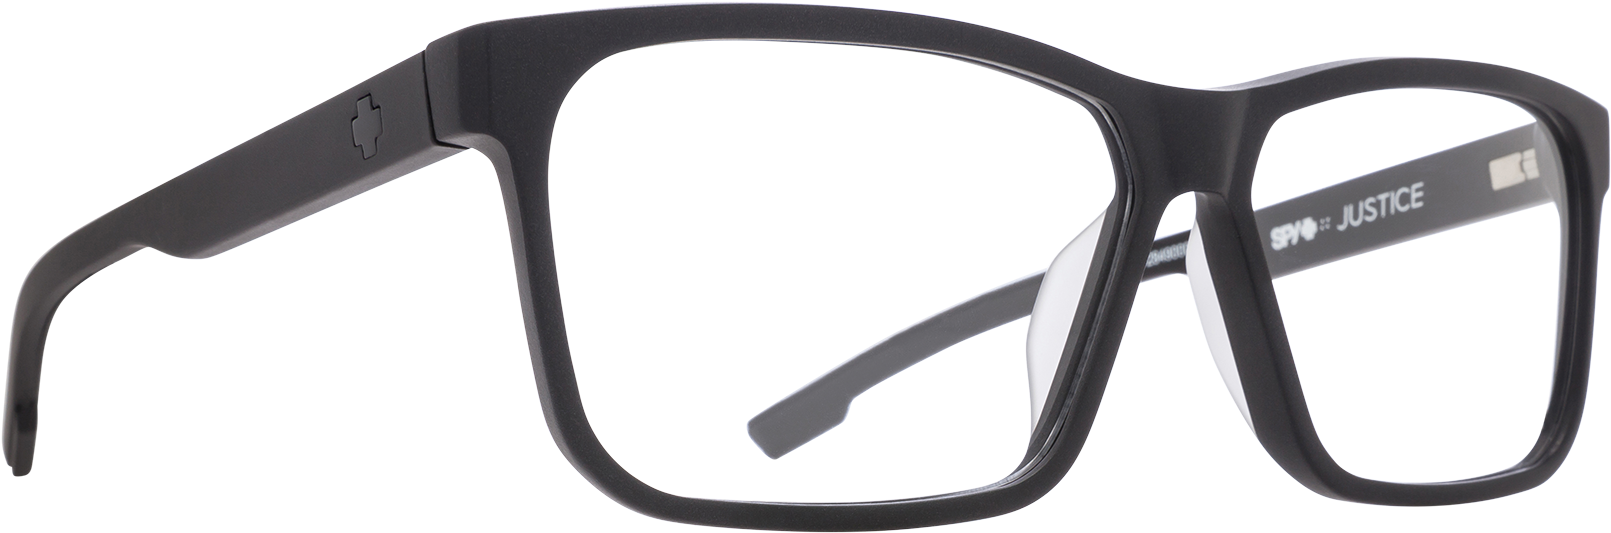 Black Designer Eyeglasses Transparent Background PNG